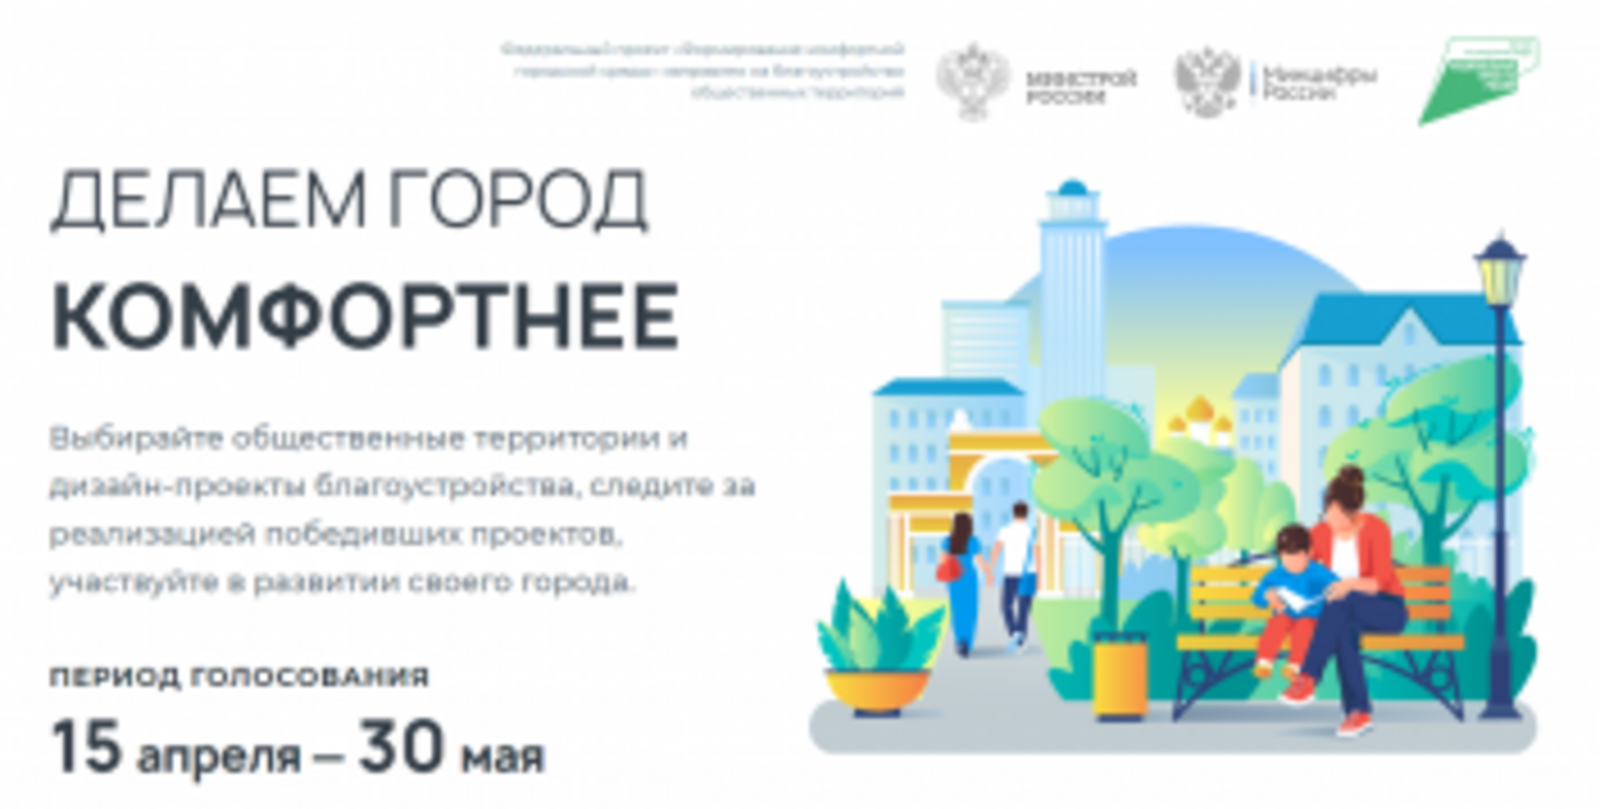 Продолжается второе Всероссийское онлайн-голосование по выбору объектов по отбору общественных территорий для благоустройства